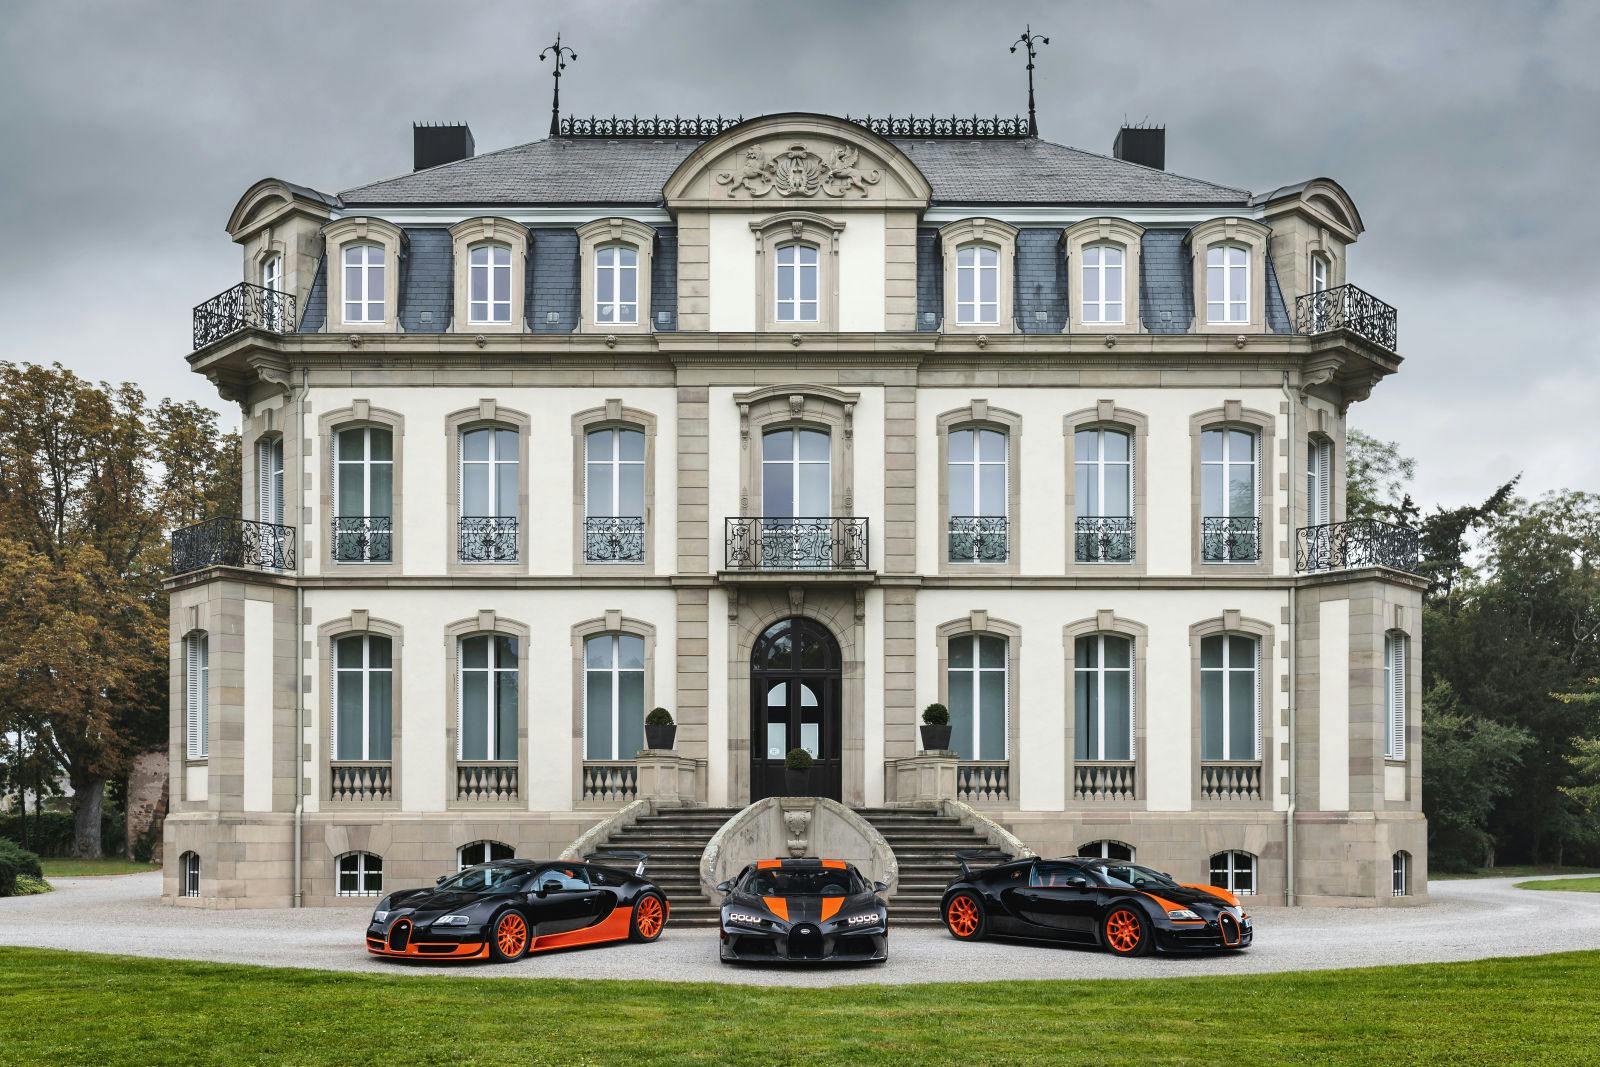 Les véhicules records Bugatti de l'ère moderne (de gauche à droite) : Veyron 16.4 Super Sport, Chiron Super Sport 300+, Veyron 16.4 Grand Sport Vitesse.